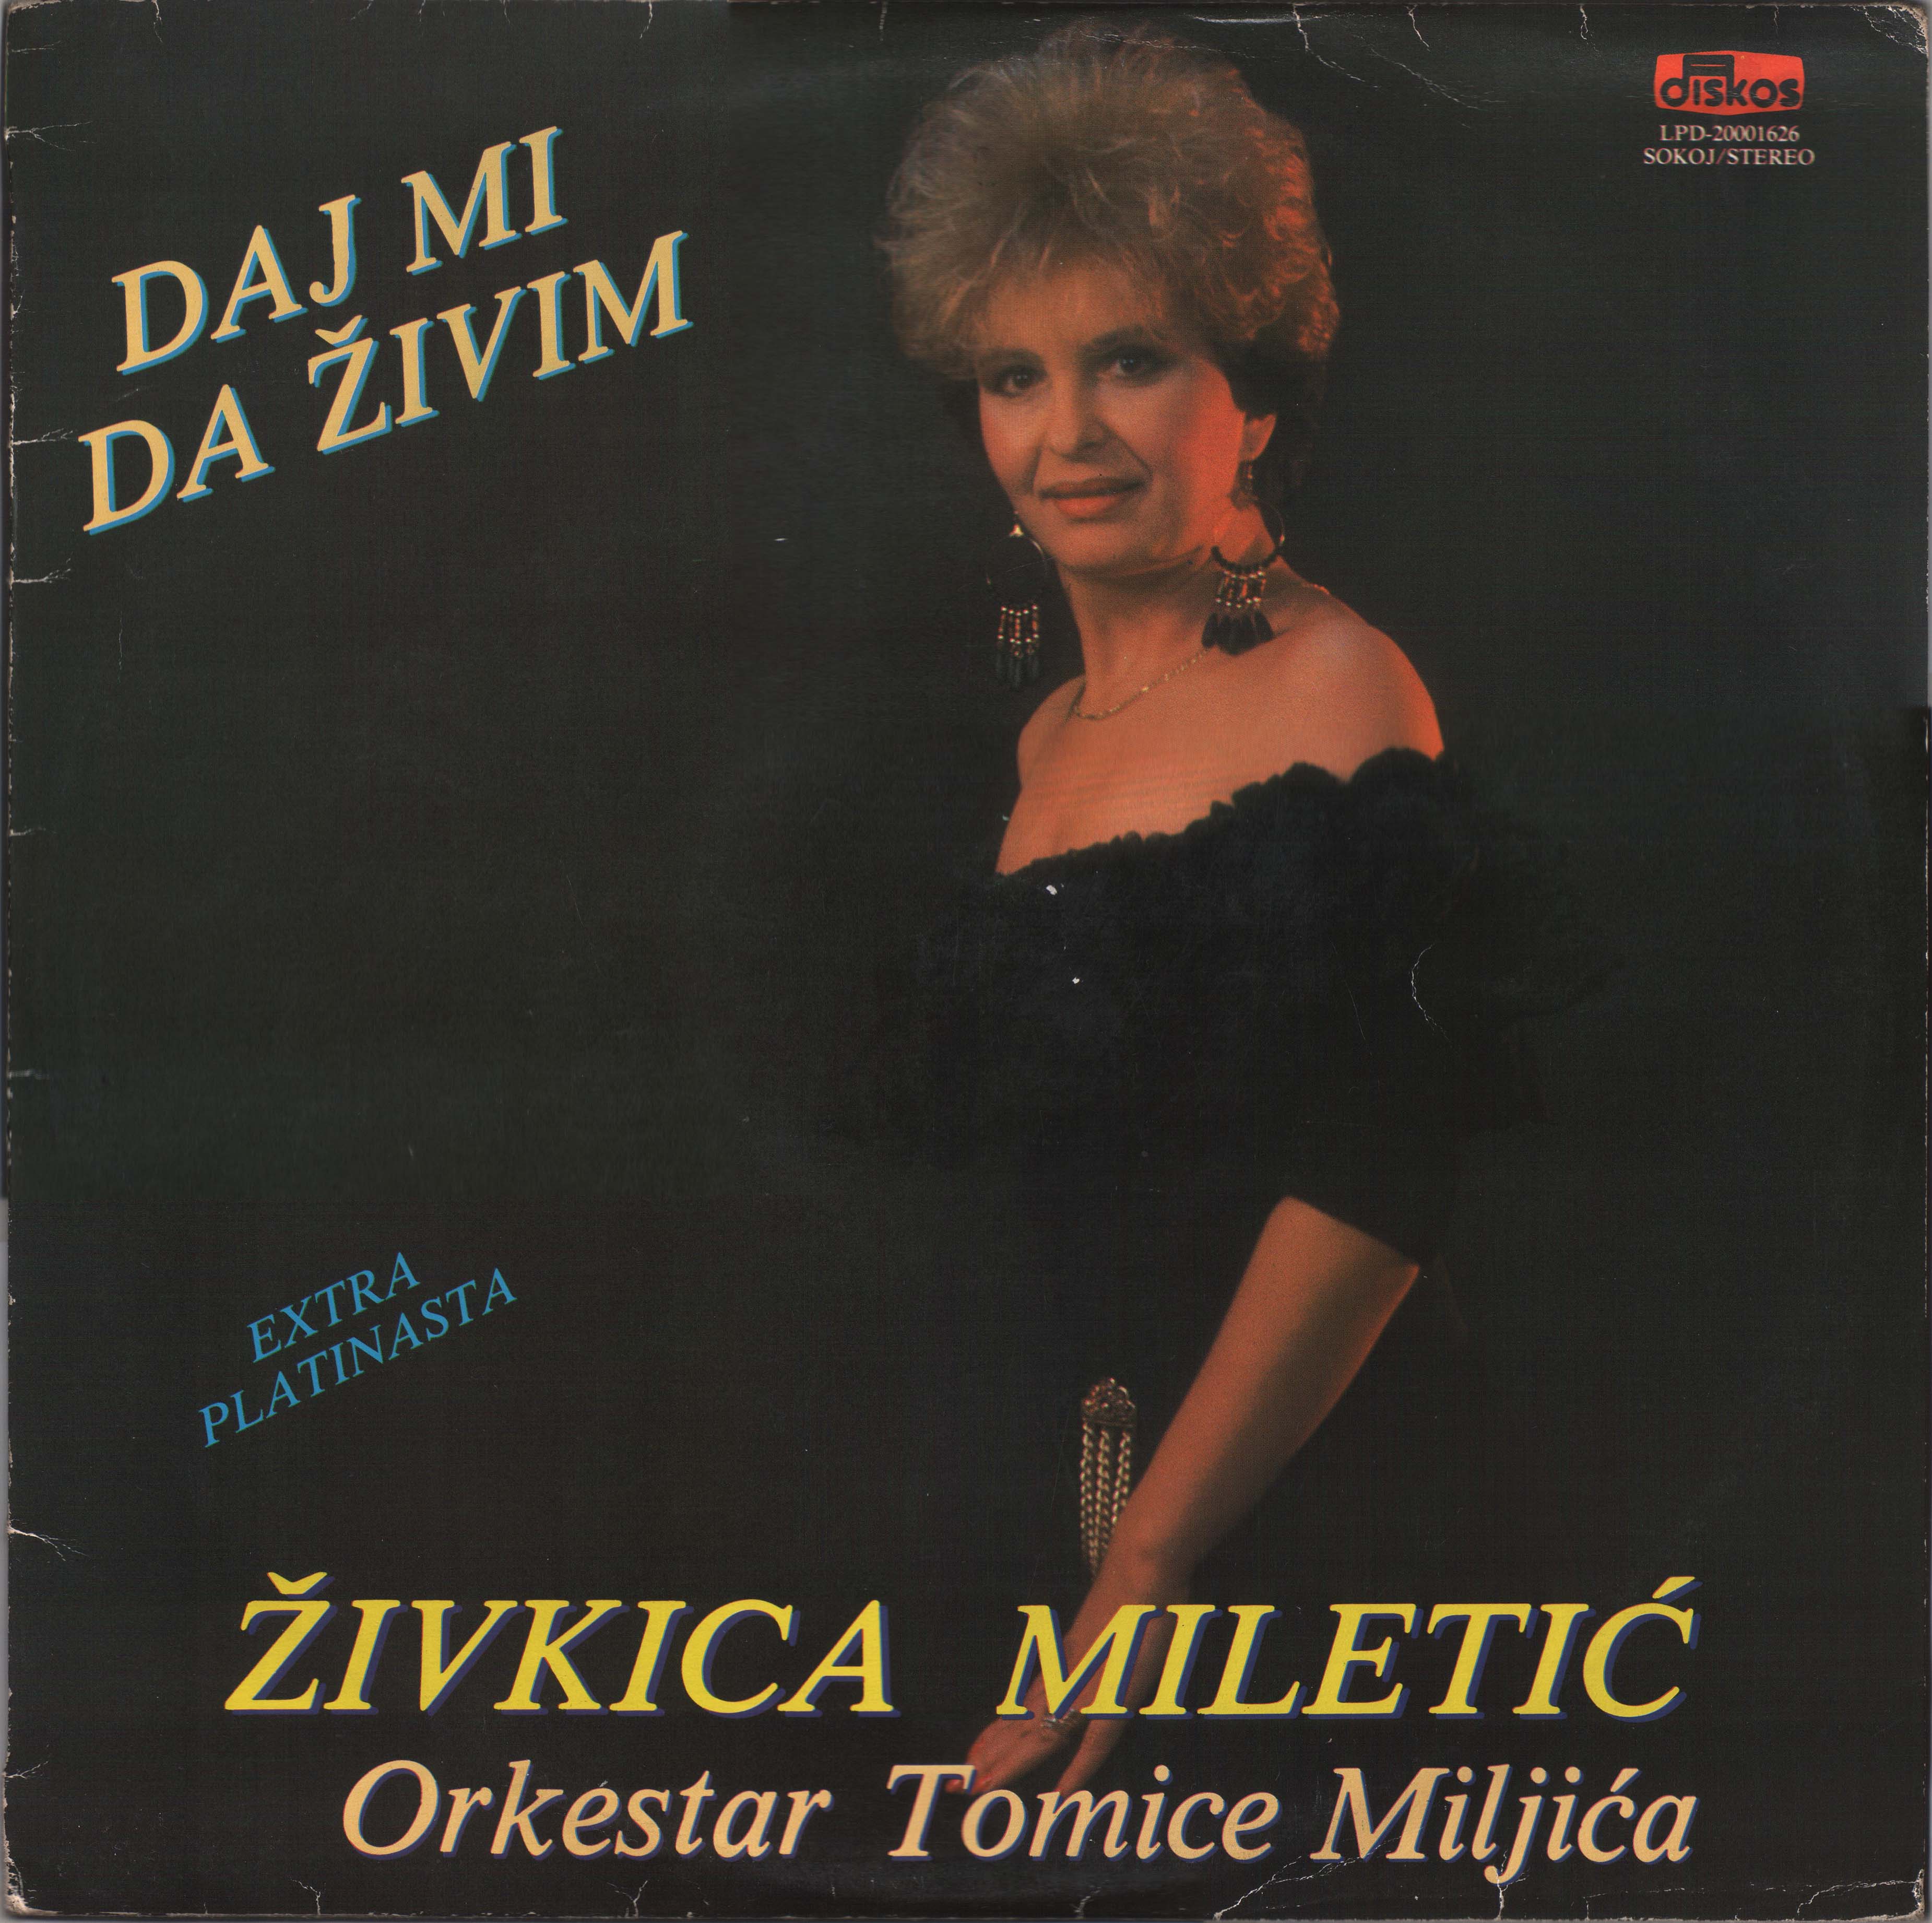 Zivkica Miletic 1991 P